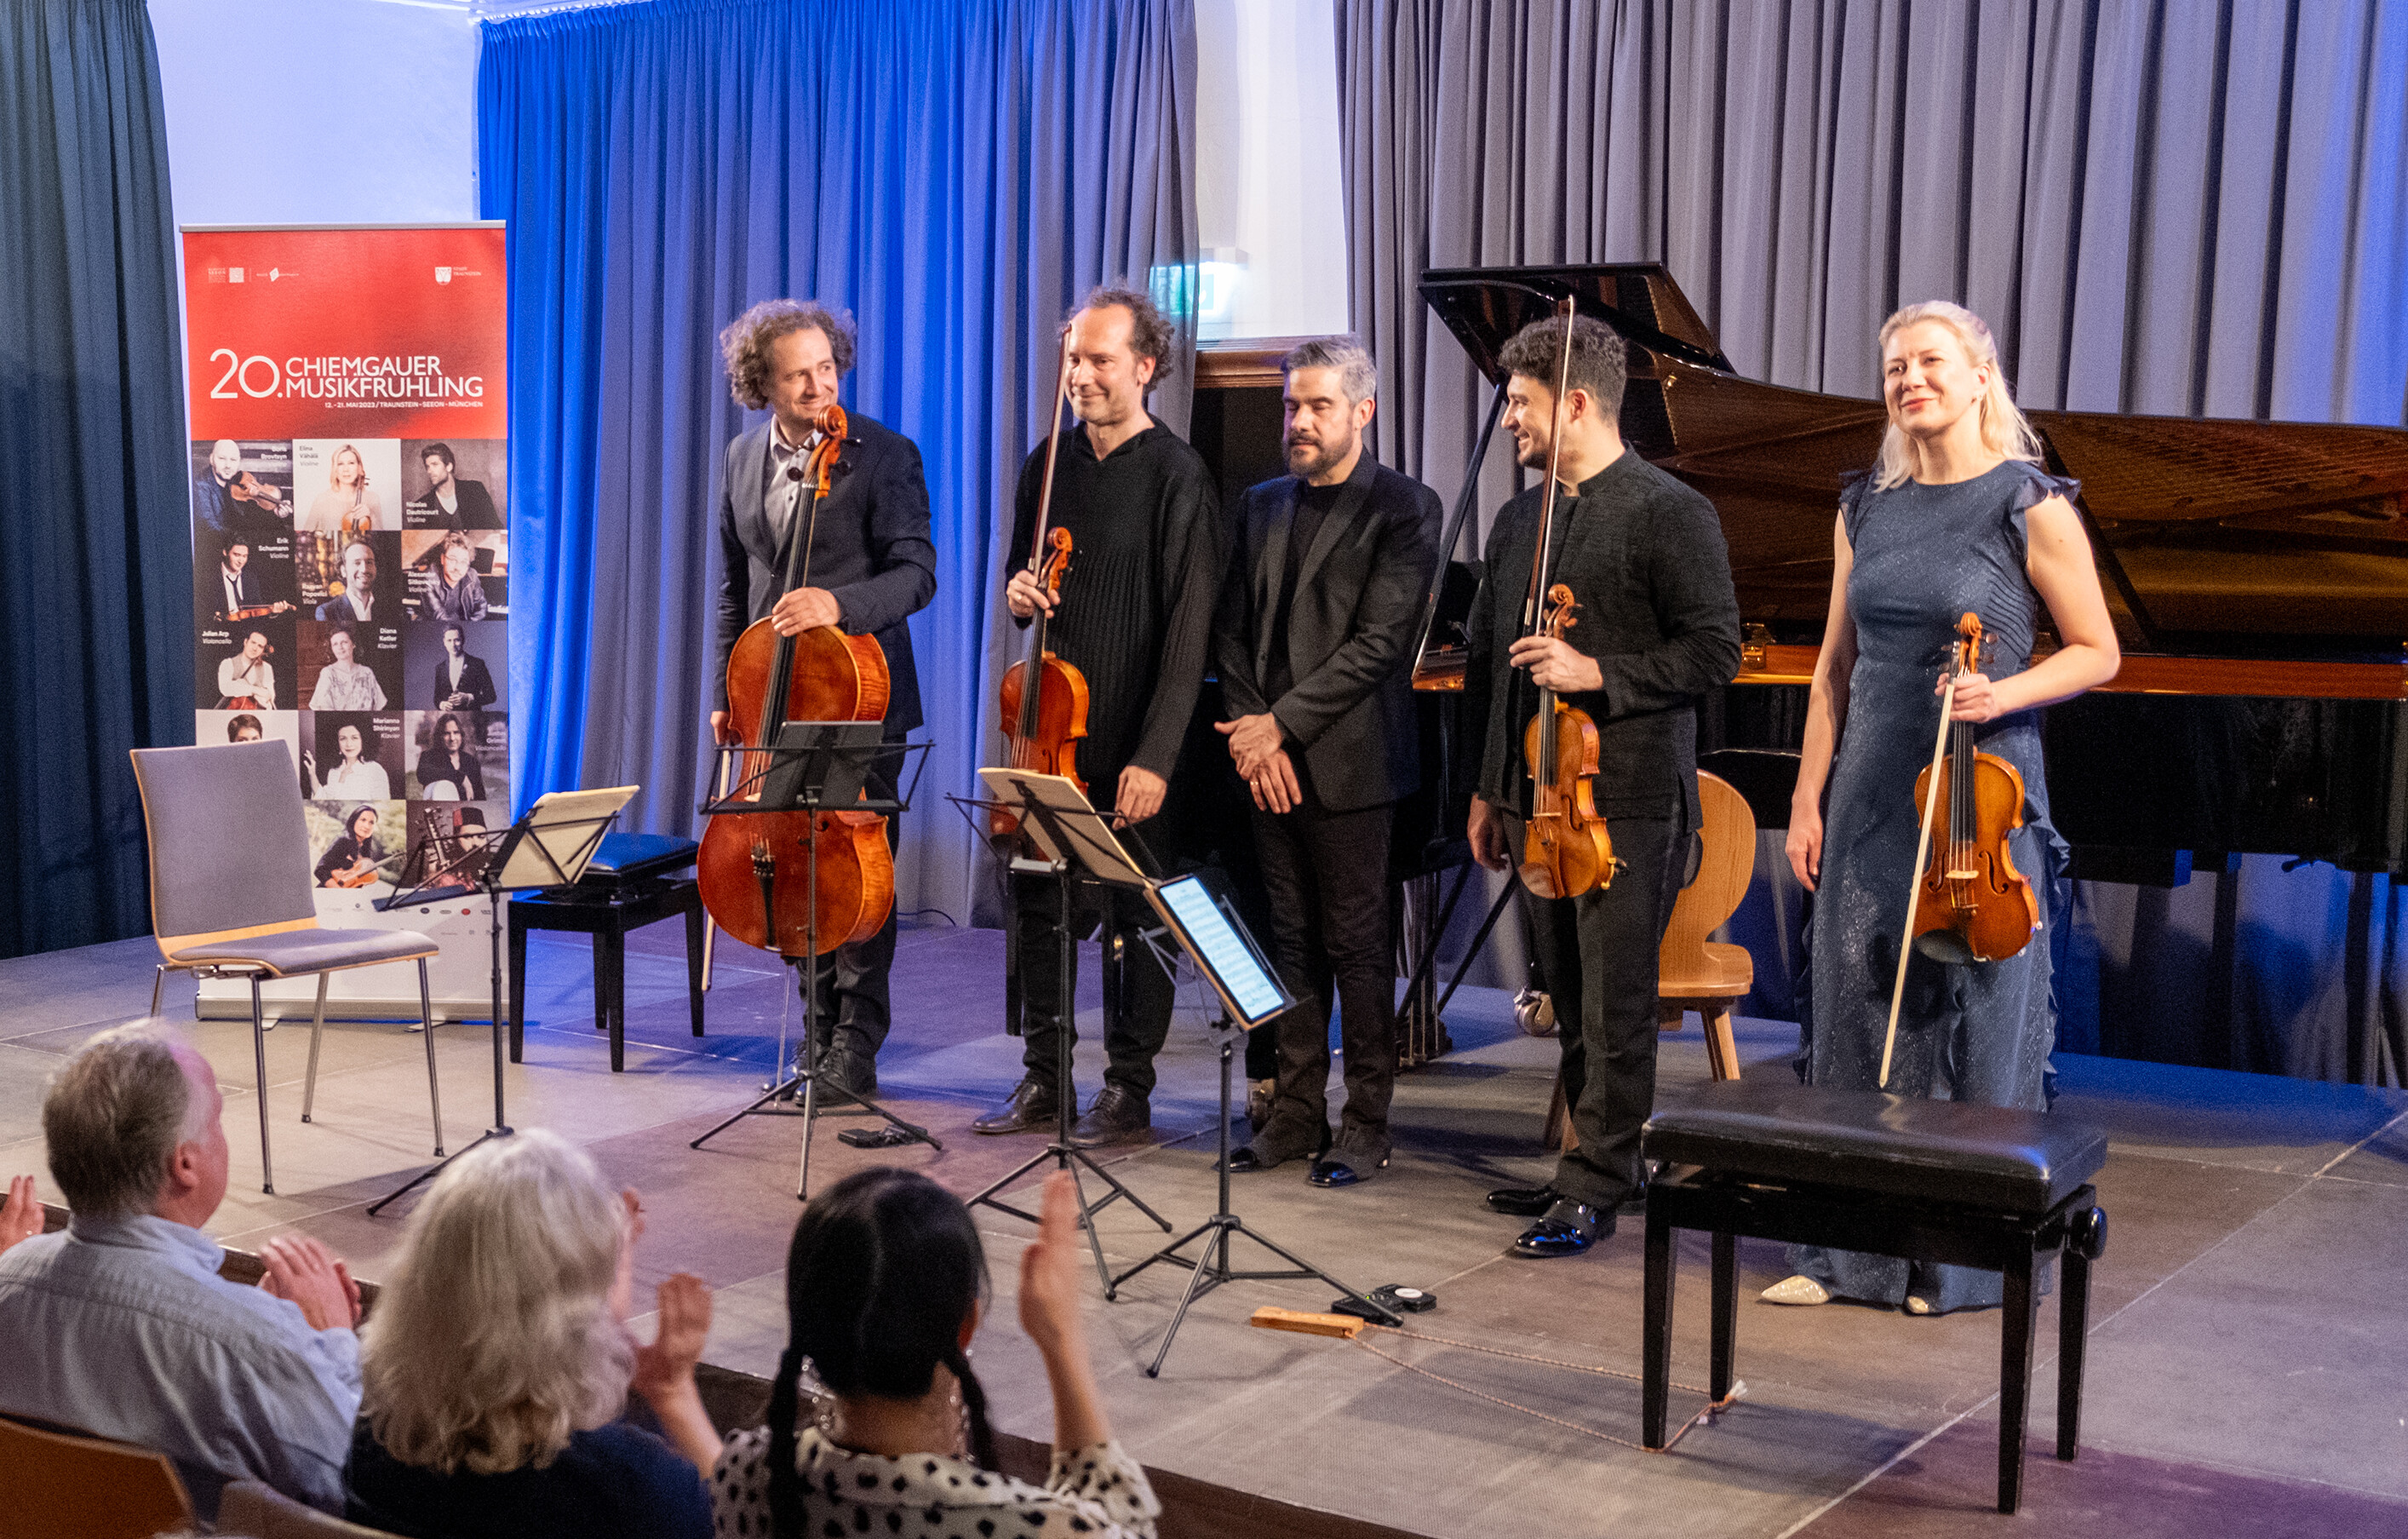 Fünf Musiker des Chiemgauer Musifrühlings stehen auf der Bühne im Festsaal von Kloster Seeon und werden vom Publikum beklatscht